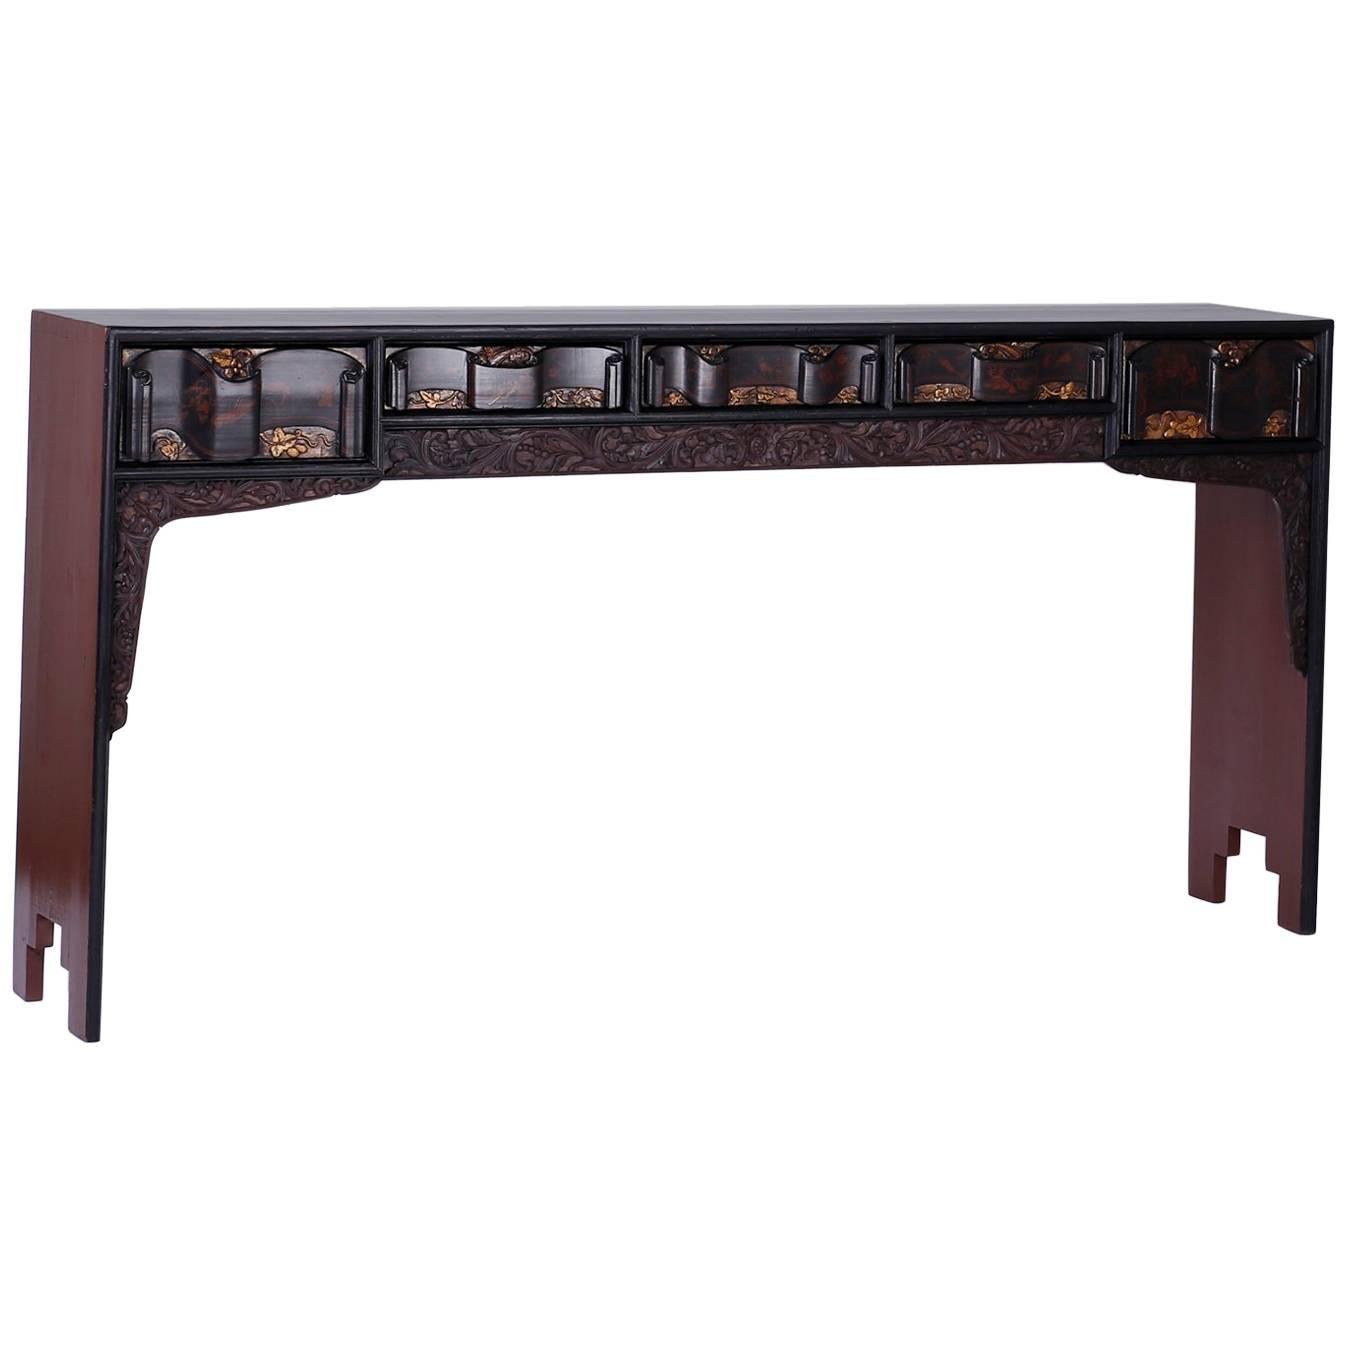 Konsolen- oder Altartisch mit fünf Schubladen, bemalt, im Stil der Chinoiserie